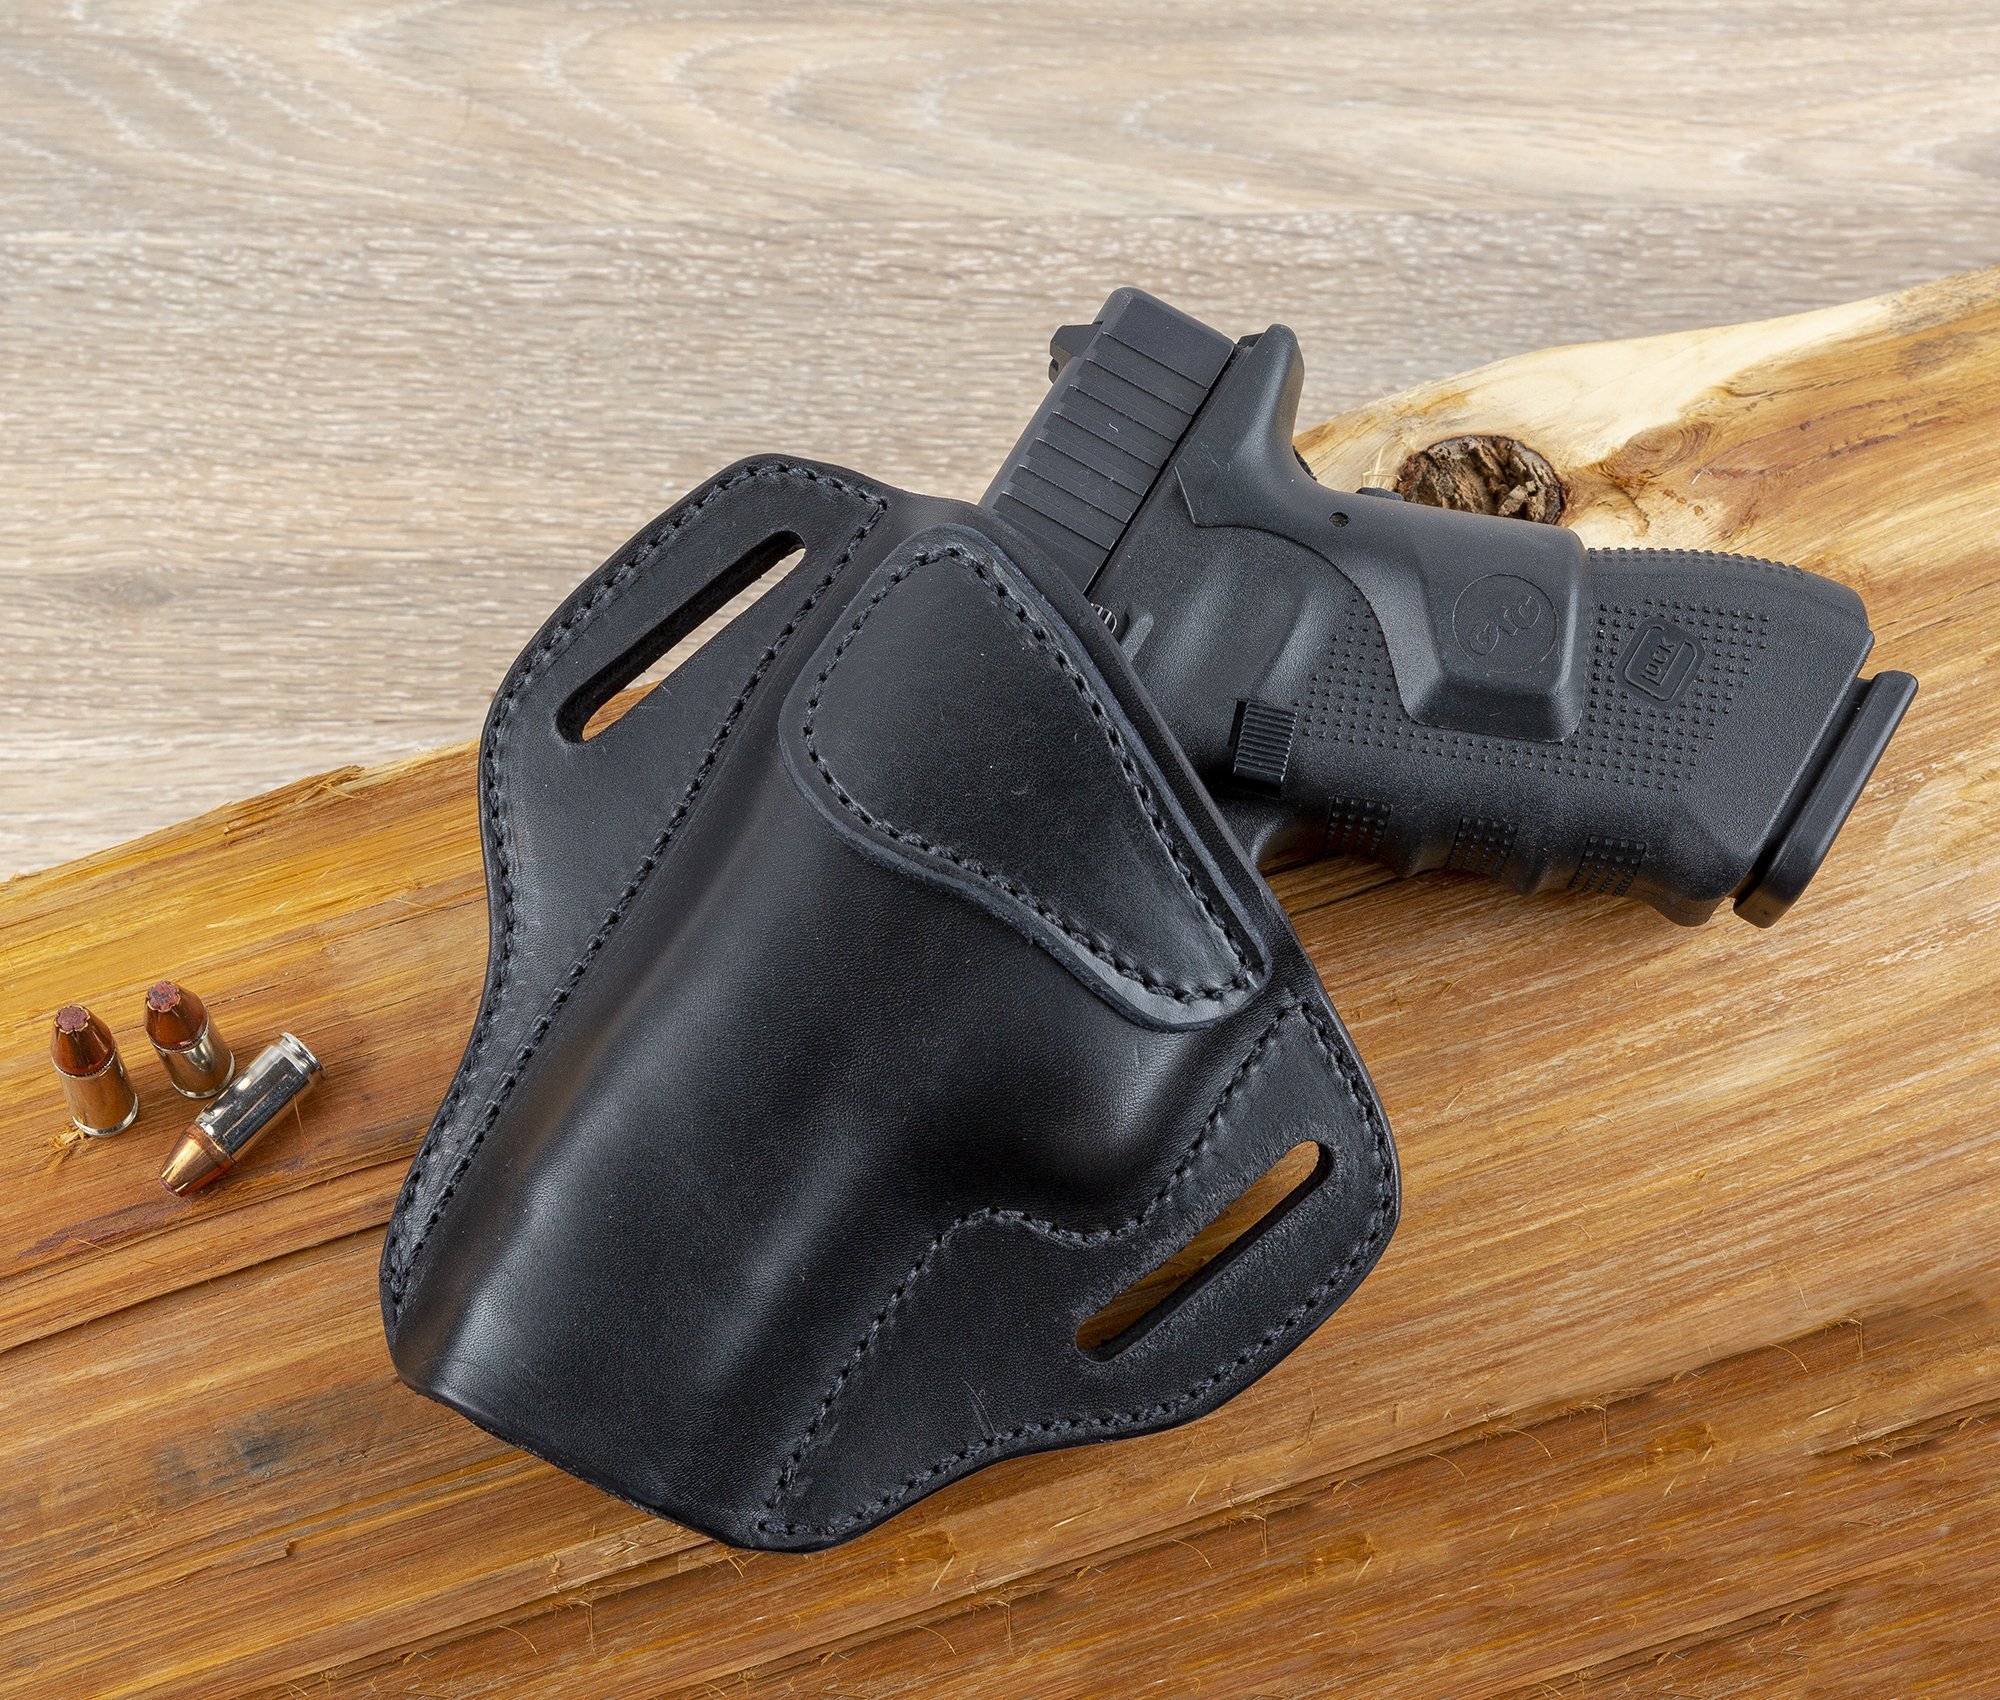 OWB Cuir 3 Slot Pancake Pistolet Étui de ceinture pour S&W Shield Glock Springfield XD 